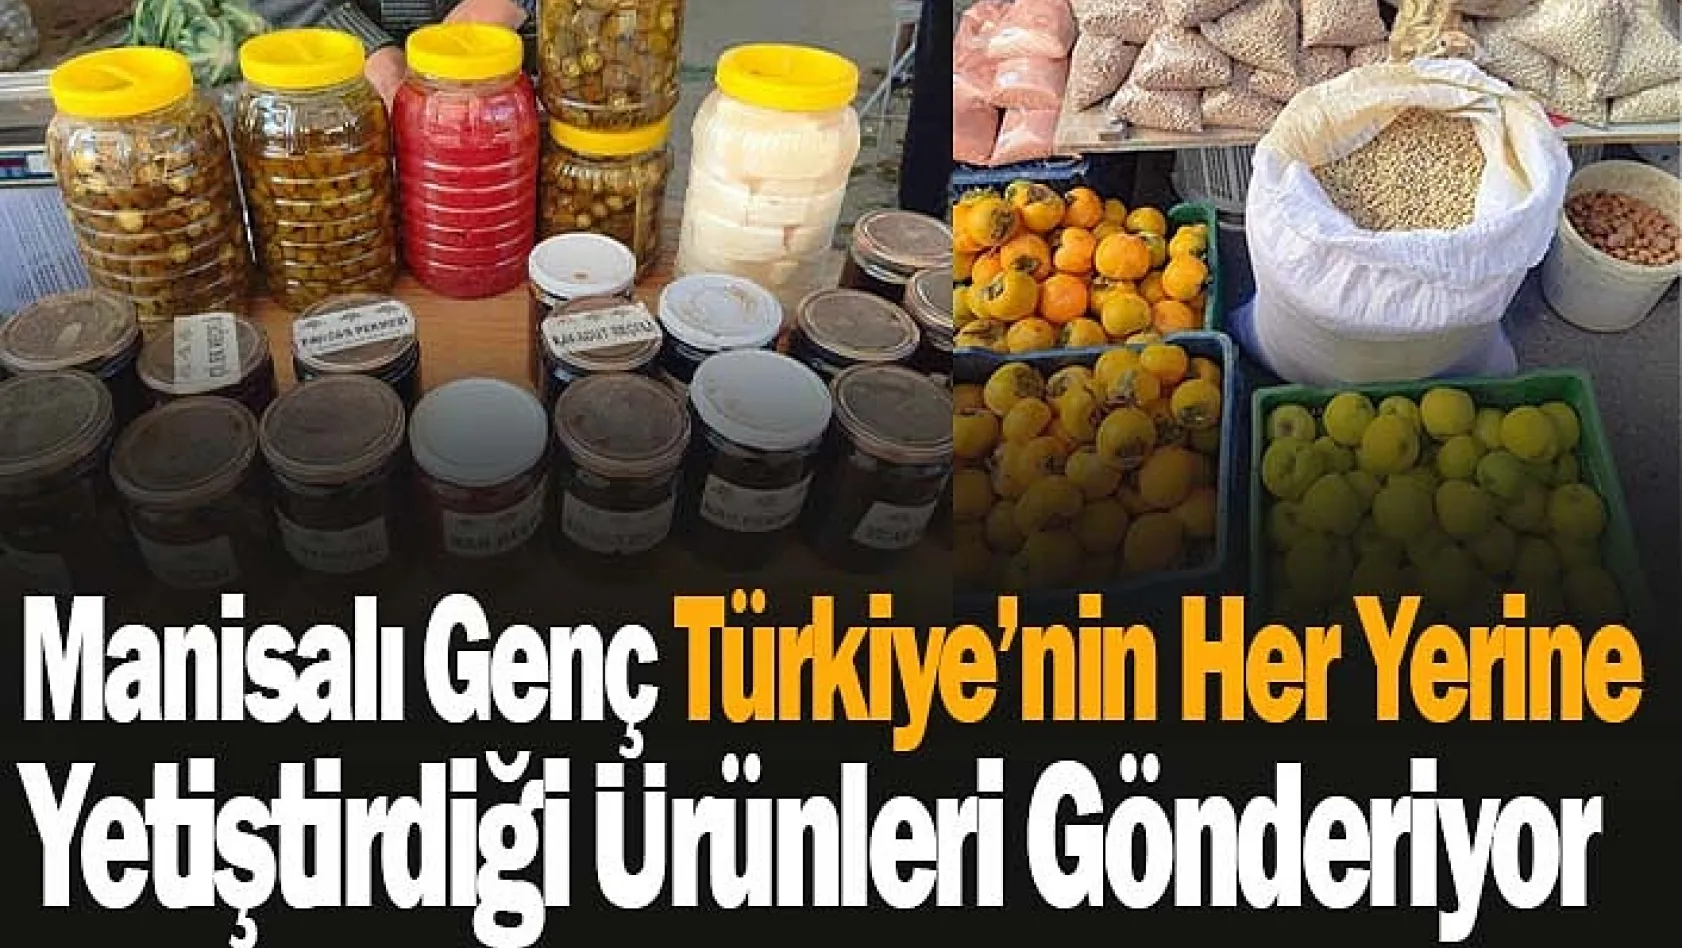 Manisalı Genç Türkiye'nin Her Yerine Yetiştirdiği Ürünleri Gönderiyor